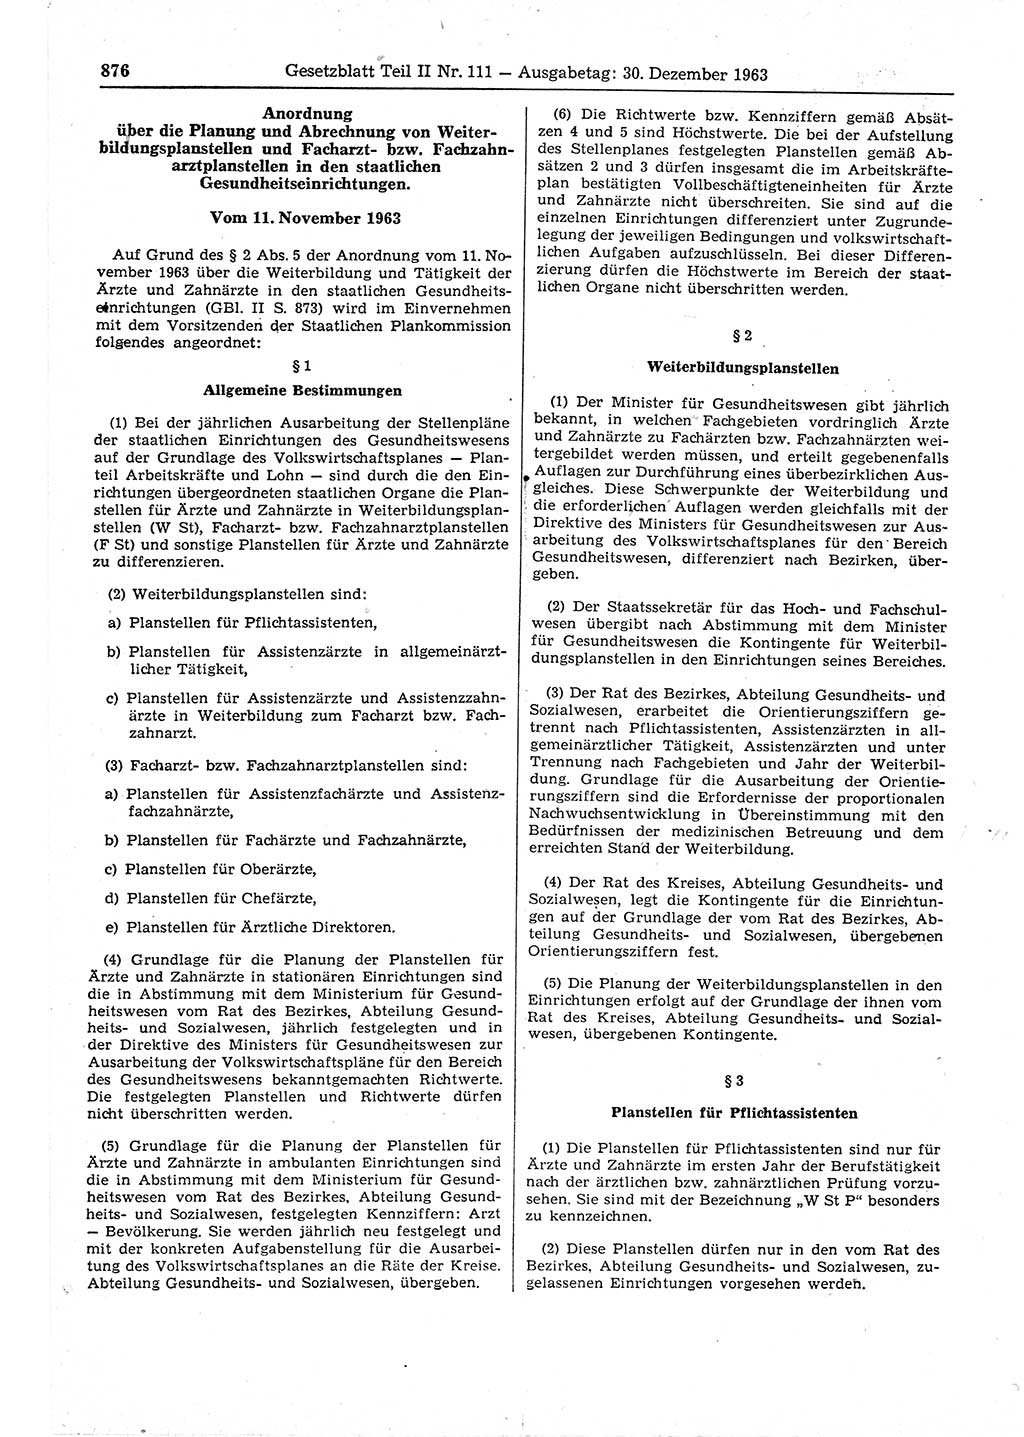 Gesetzblatt (GBl.) der Deutschen Demokratischen Republik (DDR) Teil ⅠⅠ 1963, Seite 876 (GBl. DDR ⅠⅠ 1963, S. 876)